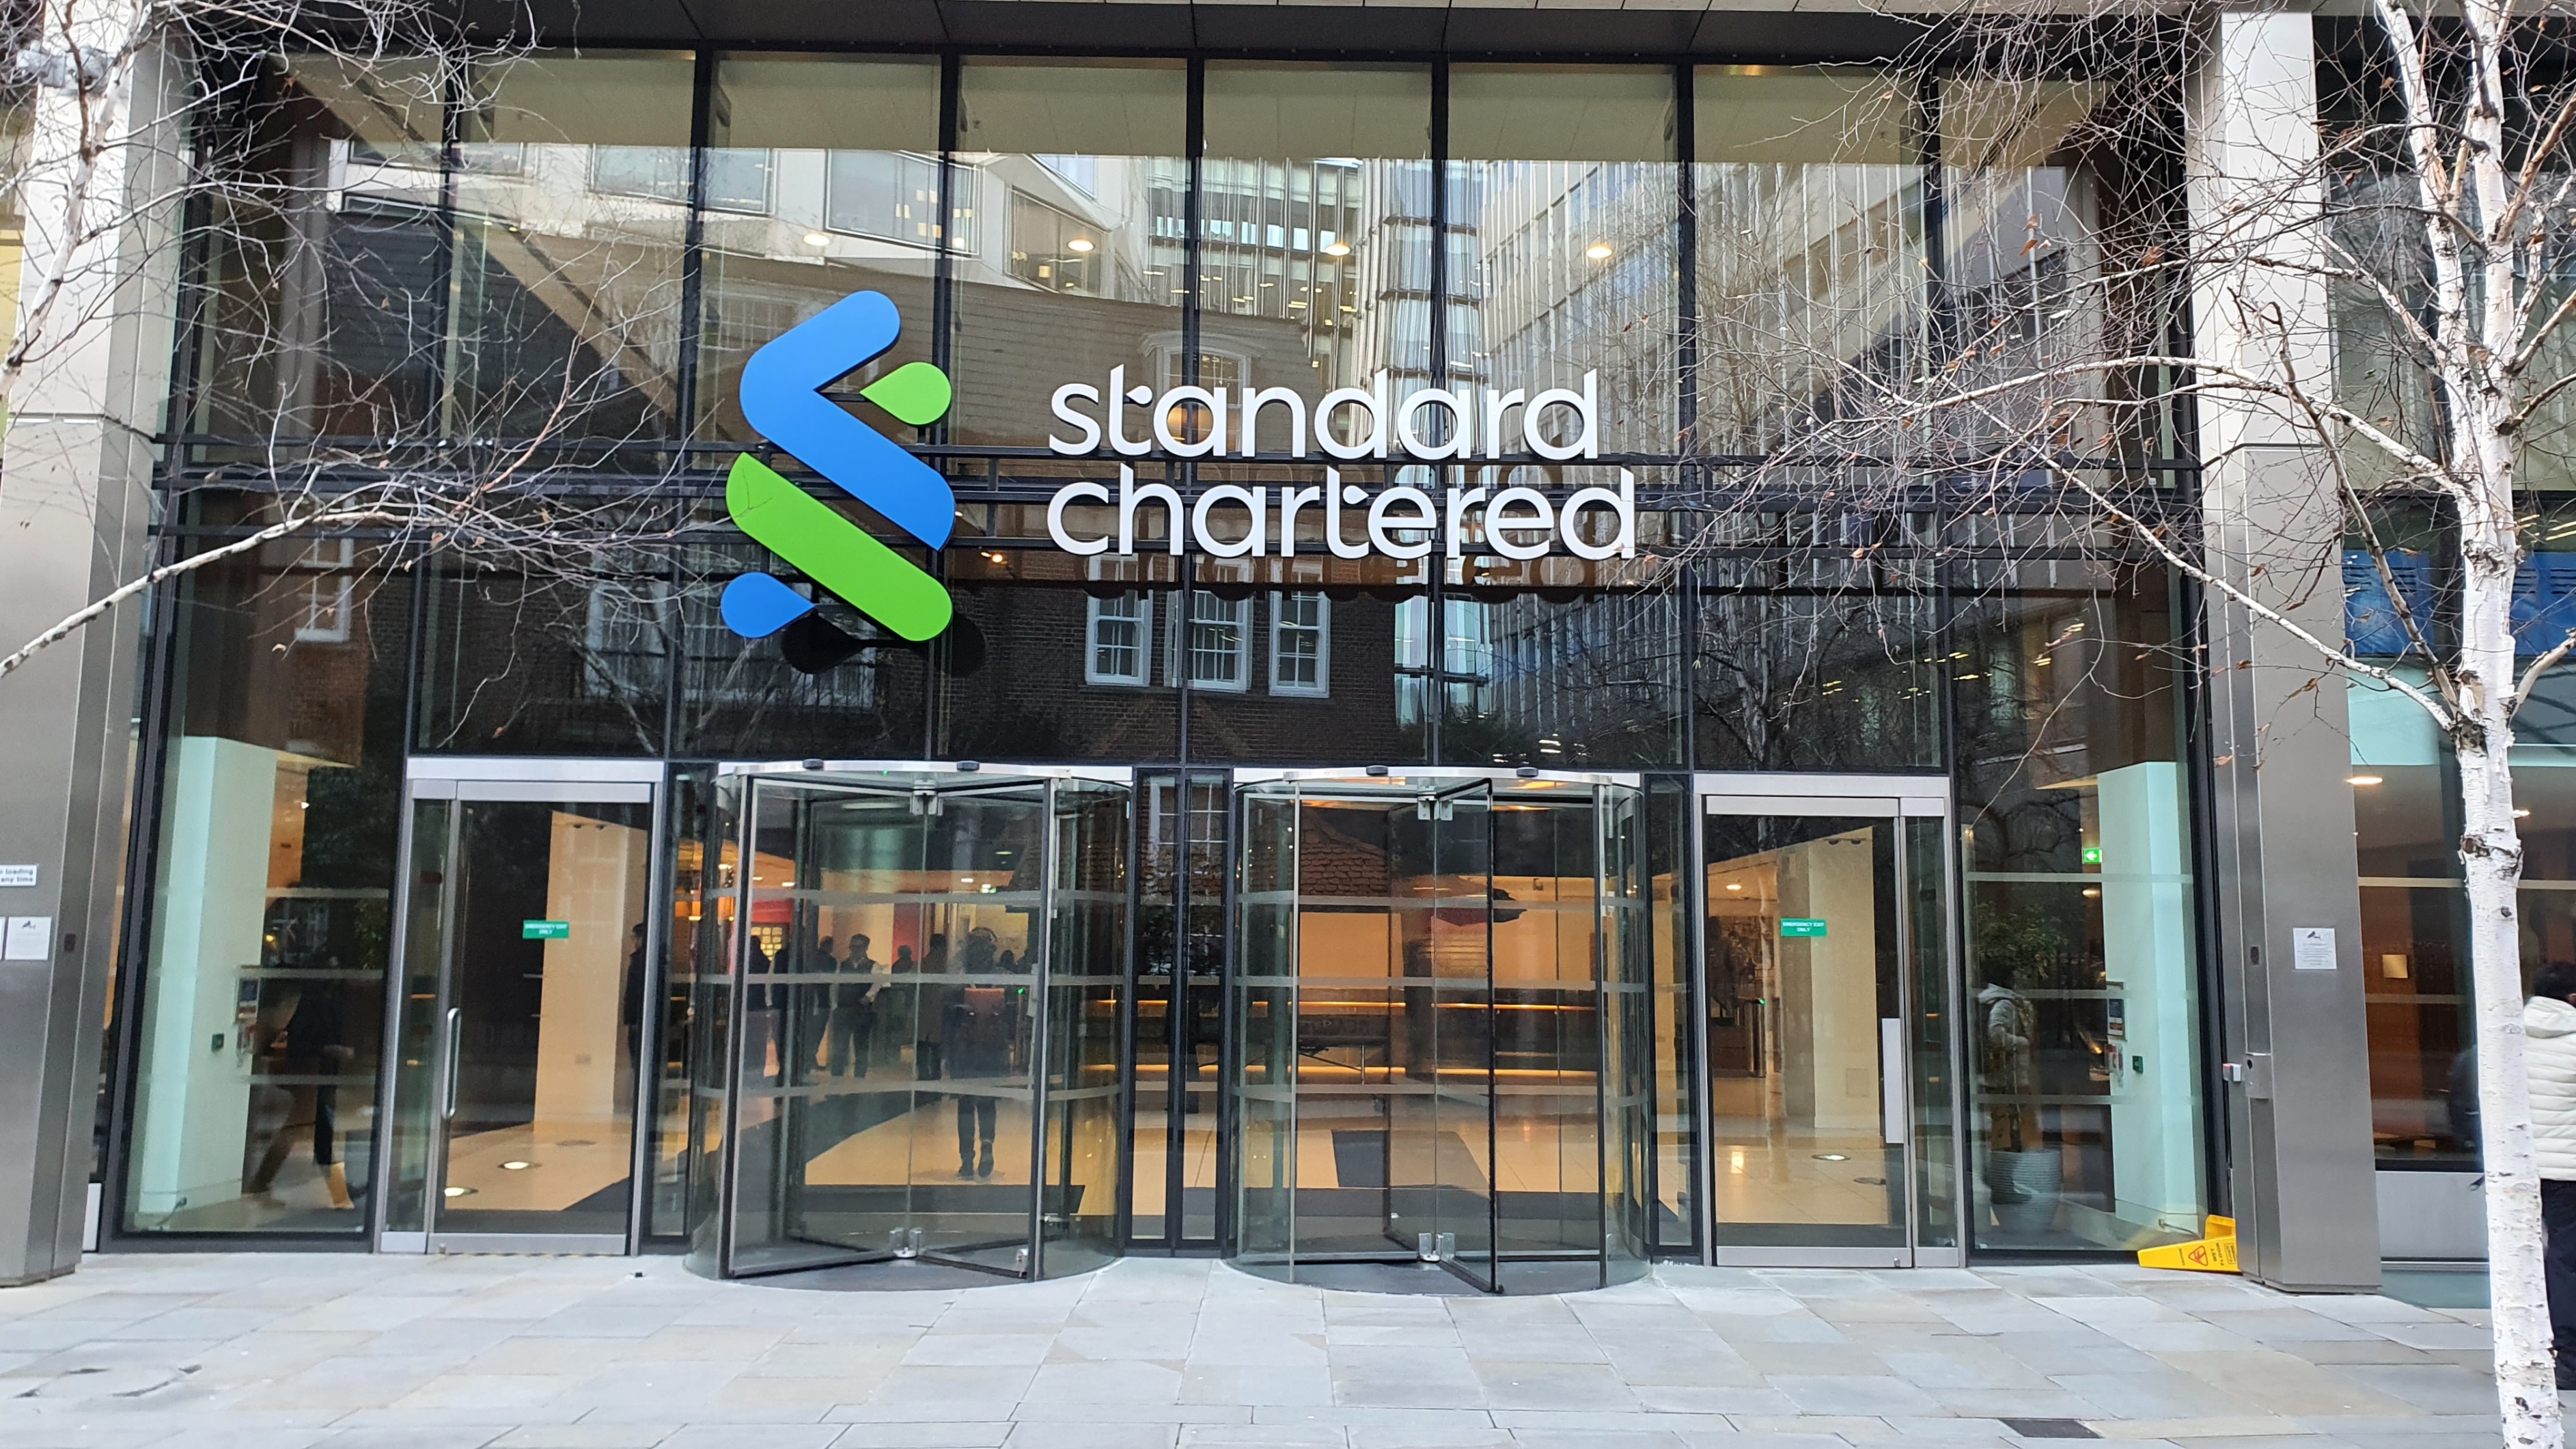 إيقاف التداول على سهم بنك ستاندرد تشارترد بعدما تراجع 17% نتيجة خسائر بمليار دولار